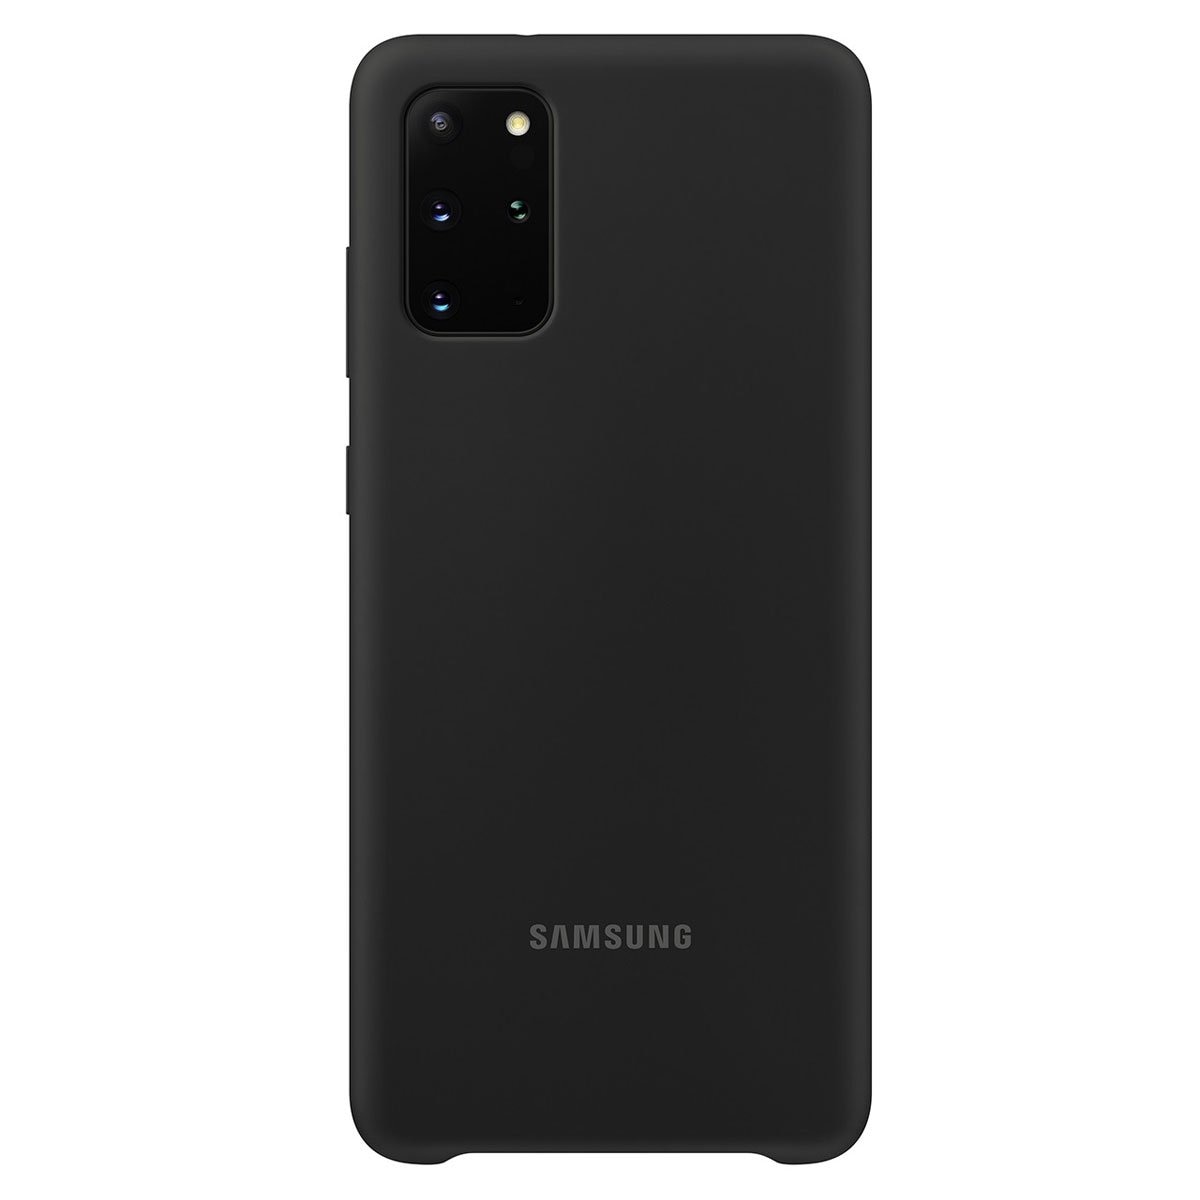 Funda Negra de Silicón para Celular Samsung Galaxy S20 Plus